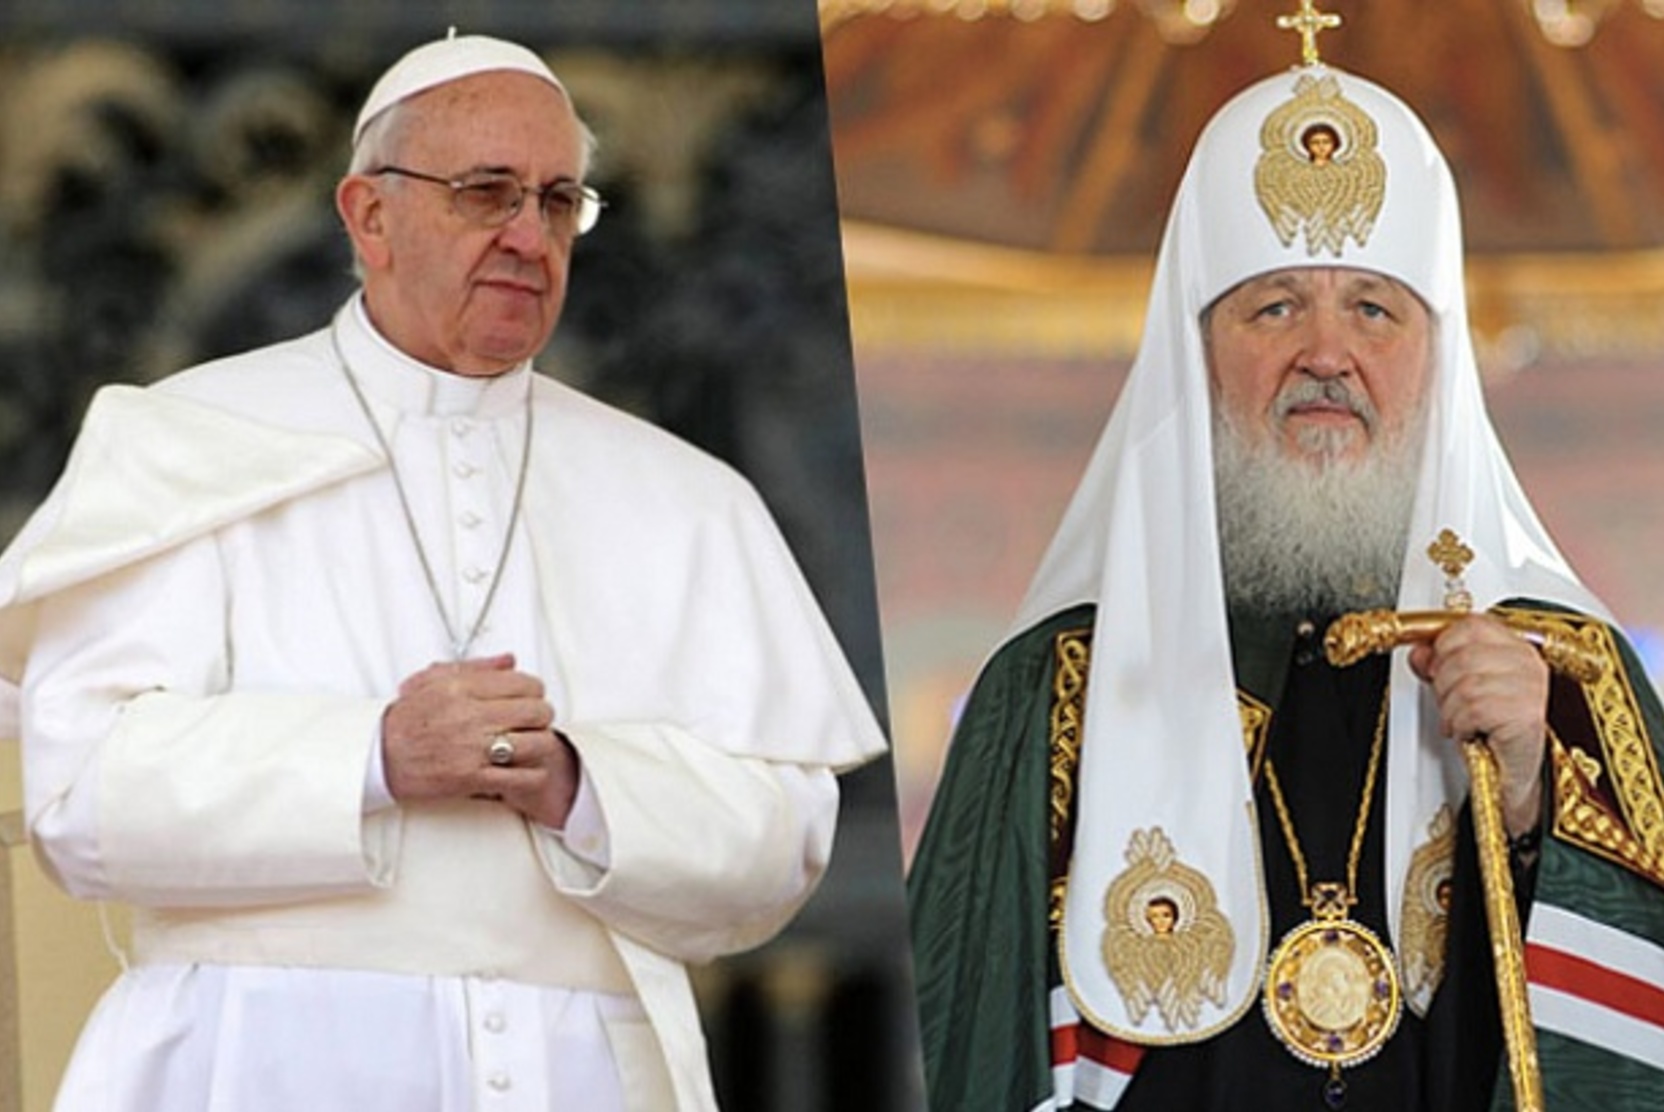 СМИ: Папа римский встретится с патриархом Кириллом в сентябре 2022 года 